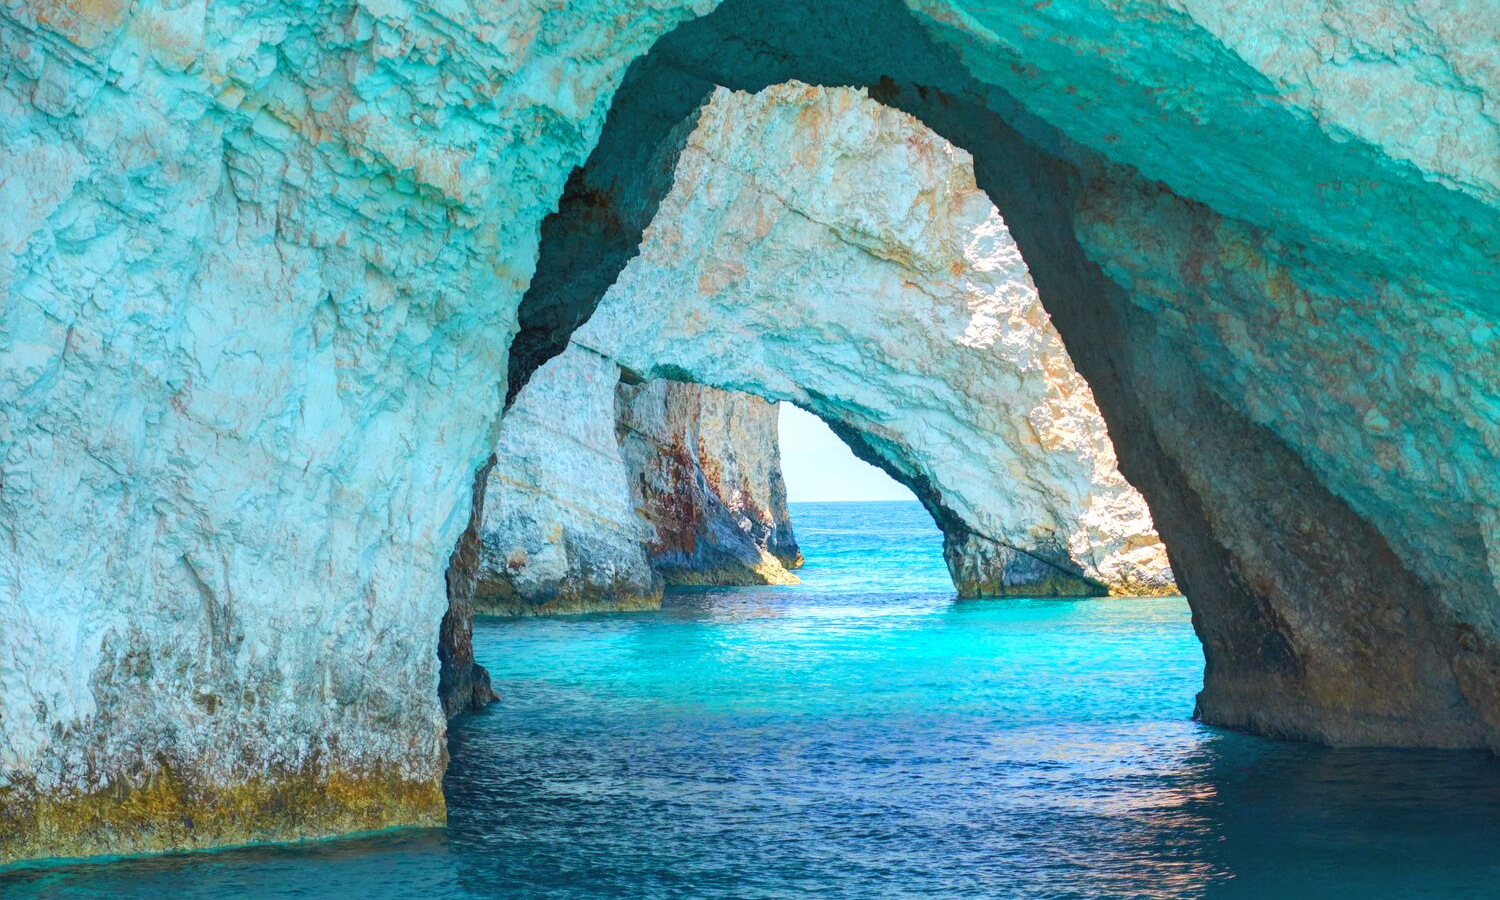 White rock arches over sea